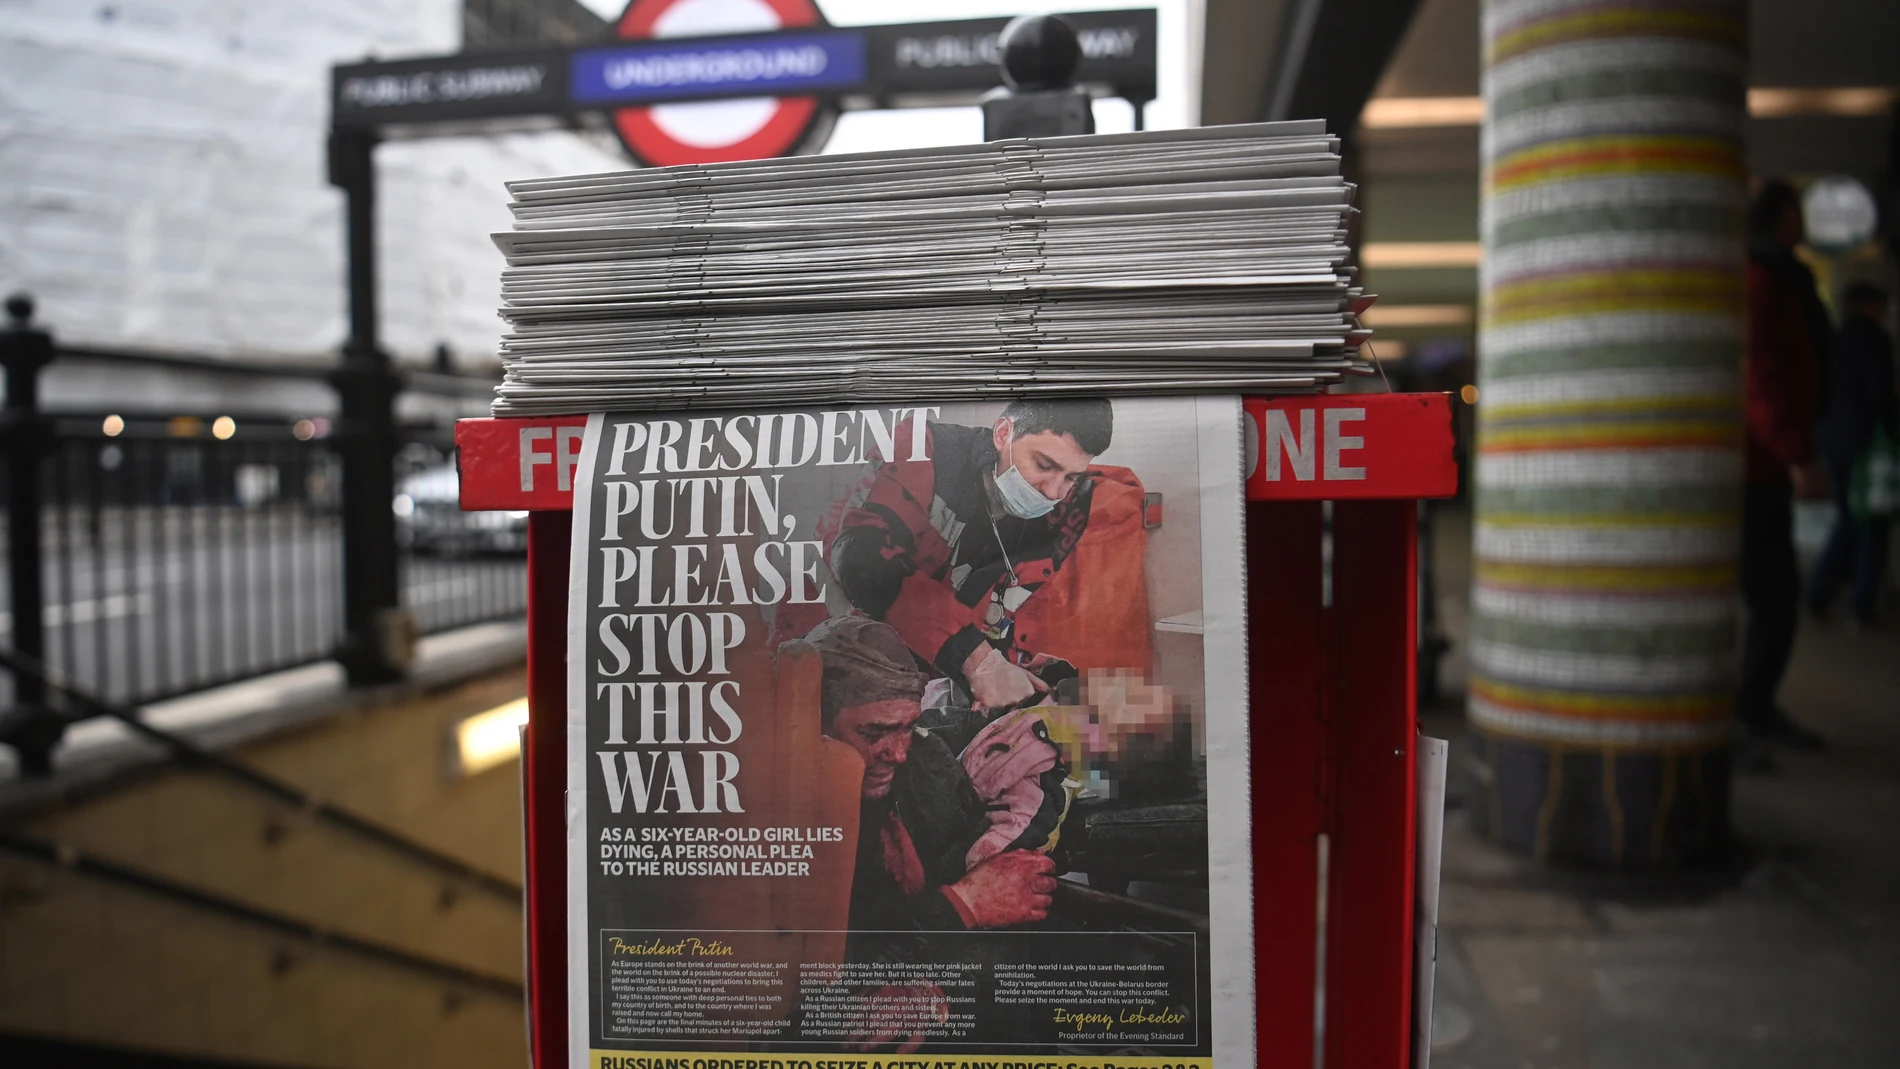 Portada del Evening Standard, propiedad del magnate ruso Evgeny Lebdev, llamando a poner fin al conflicto